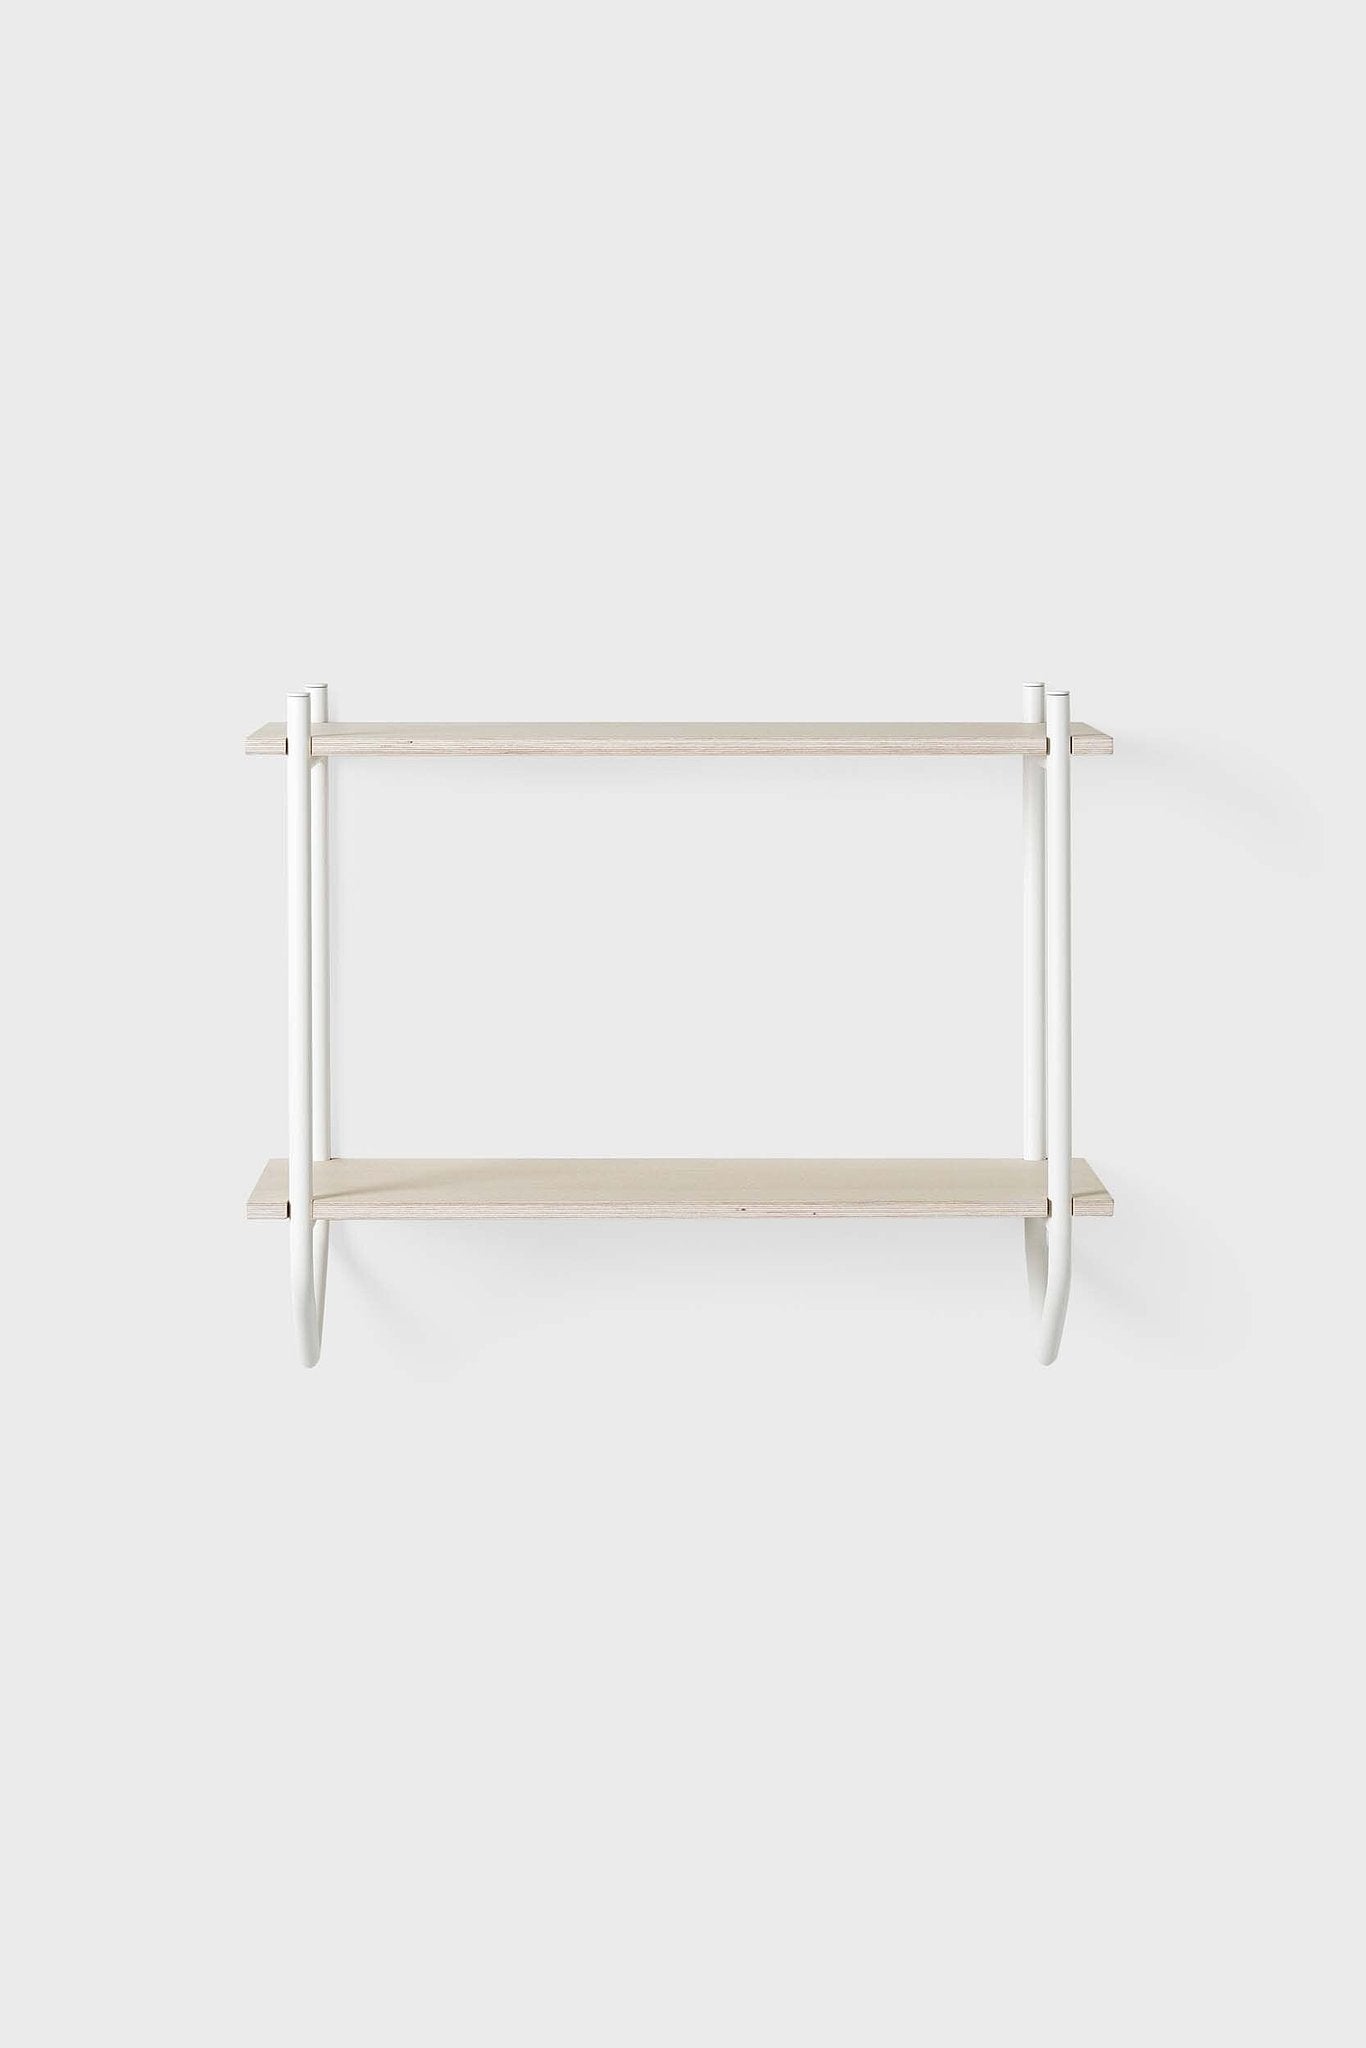 EMKO Dessus Wall Shelf White frame